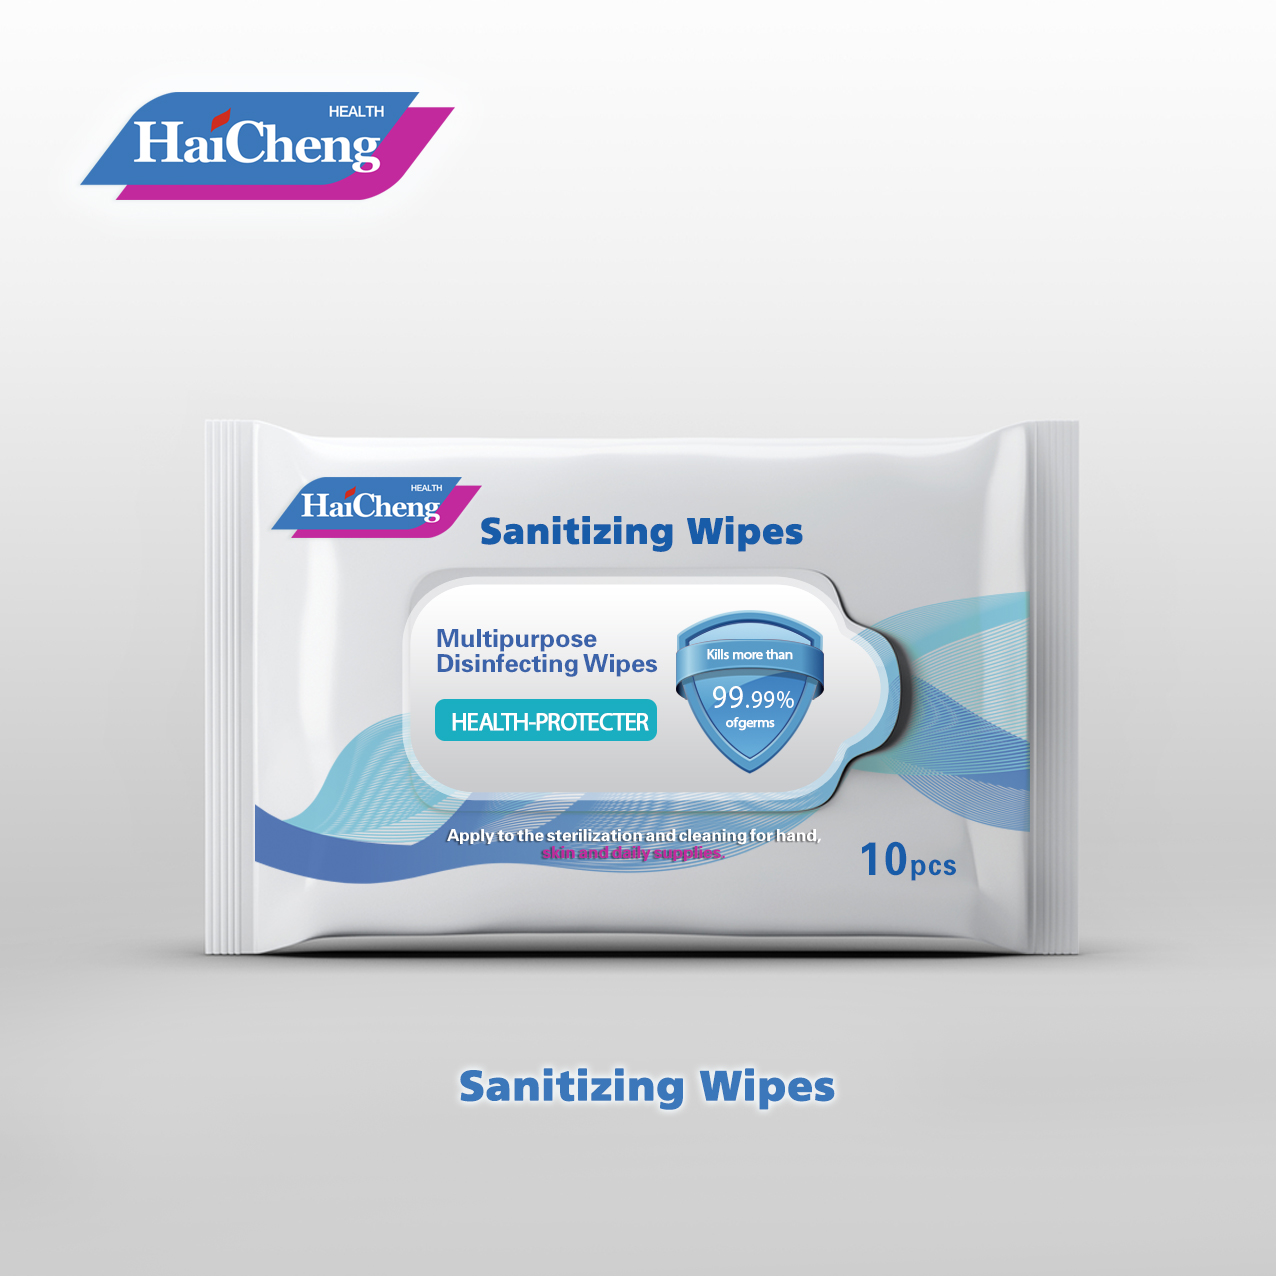 Sanitizing wipes Featured Image